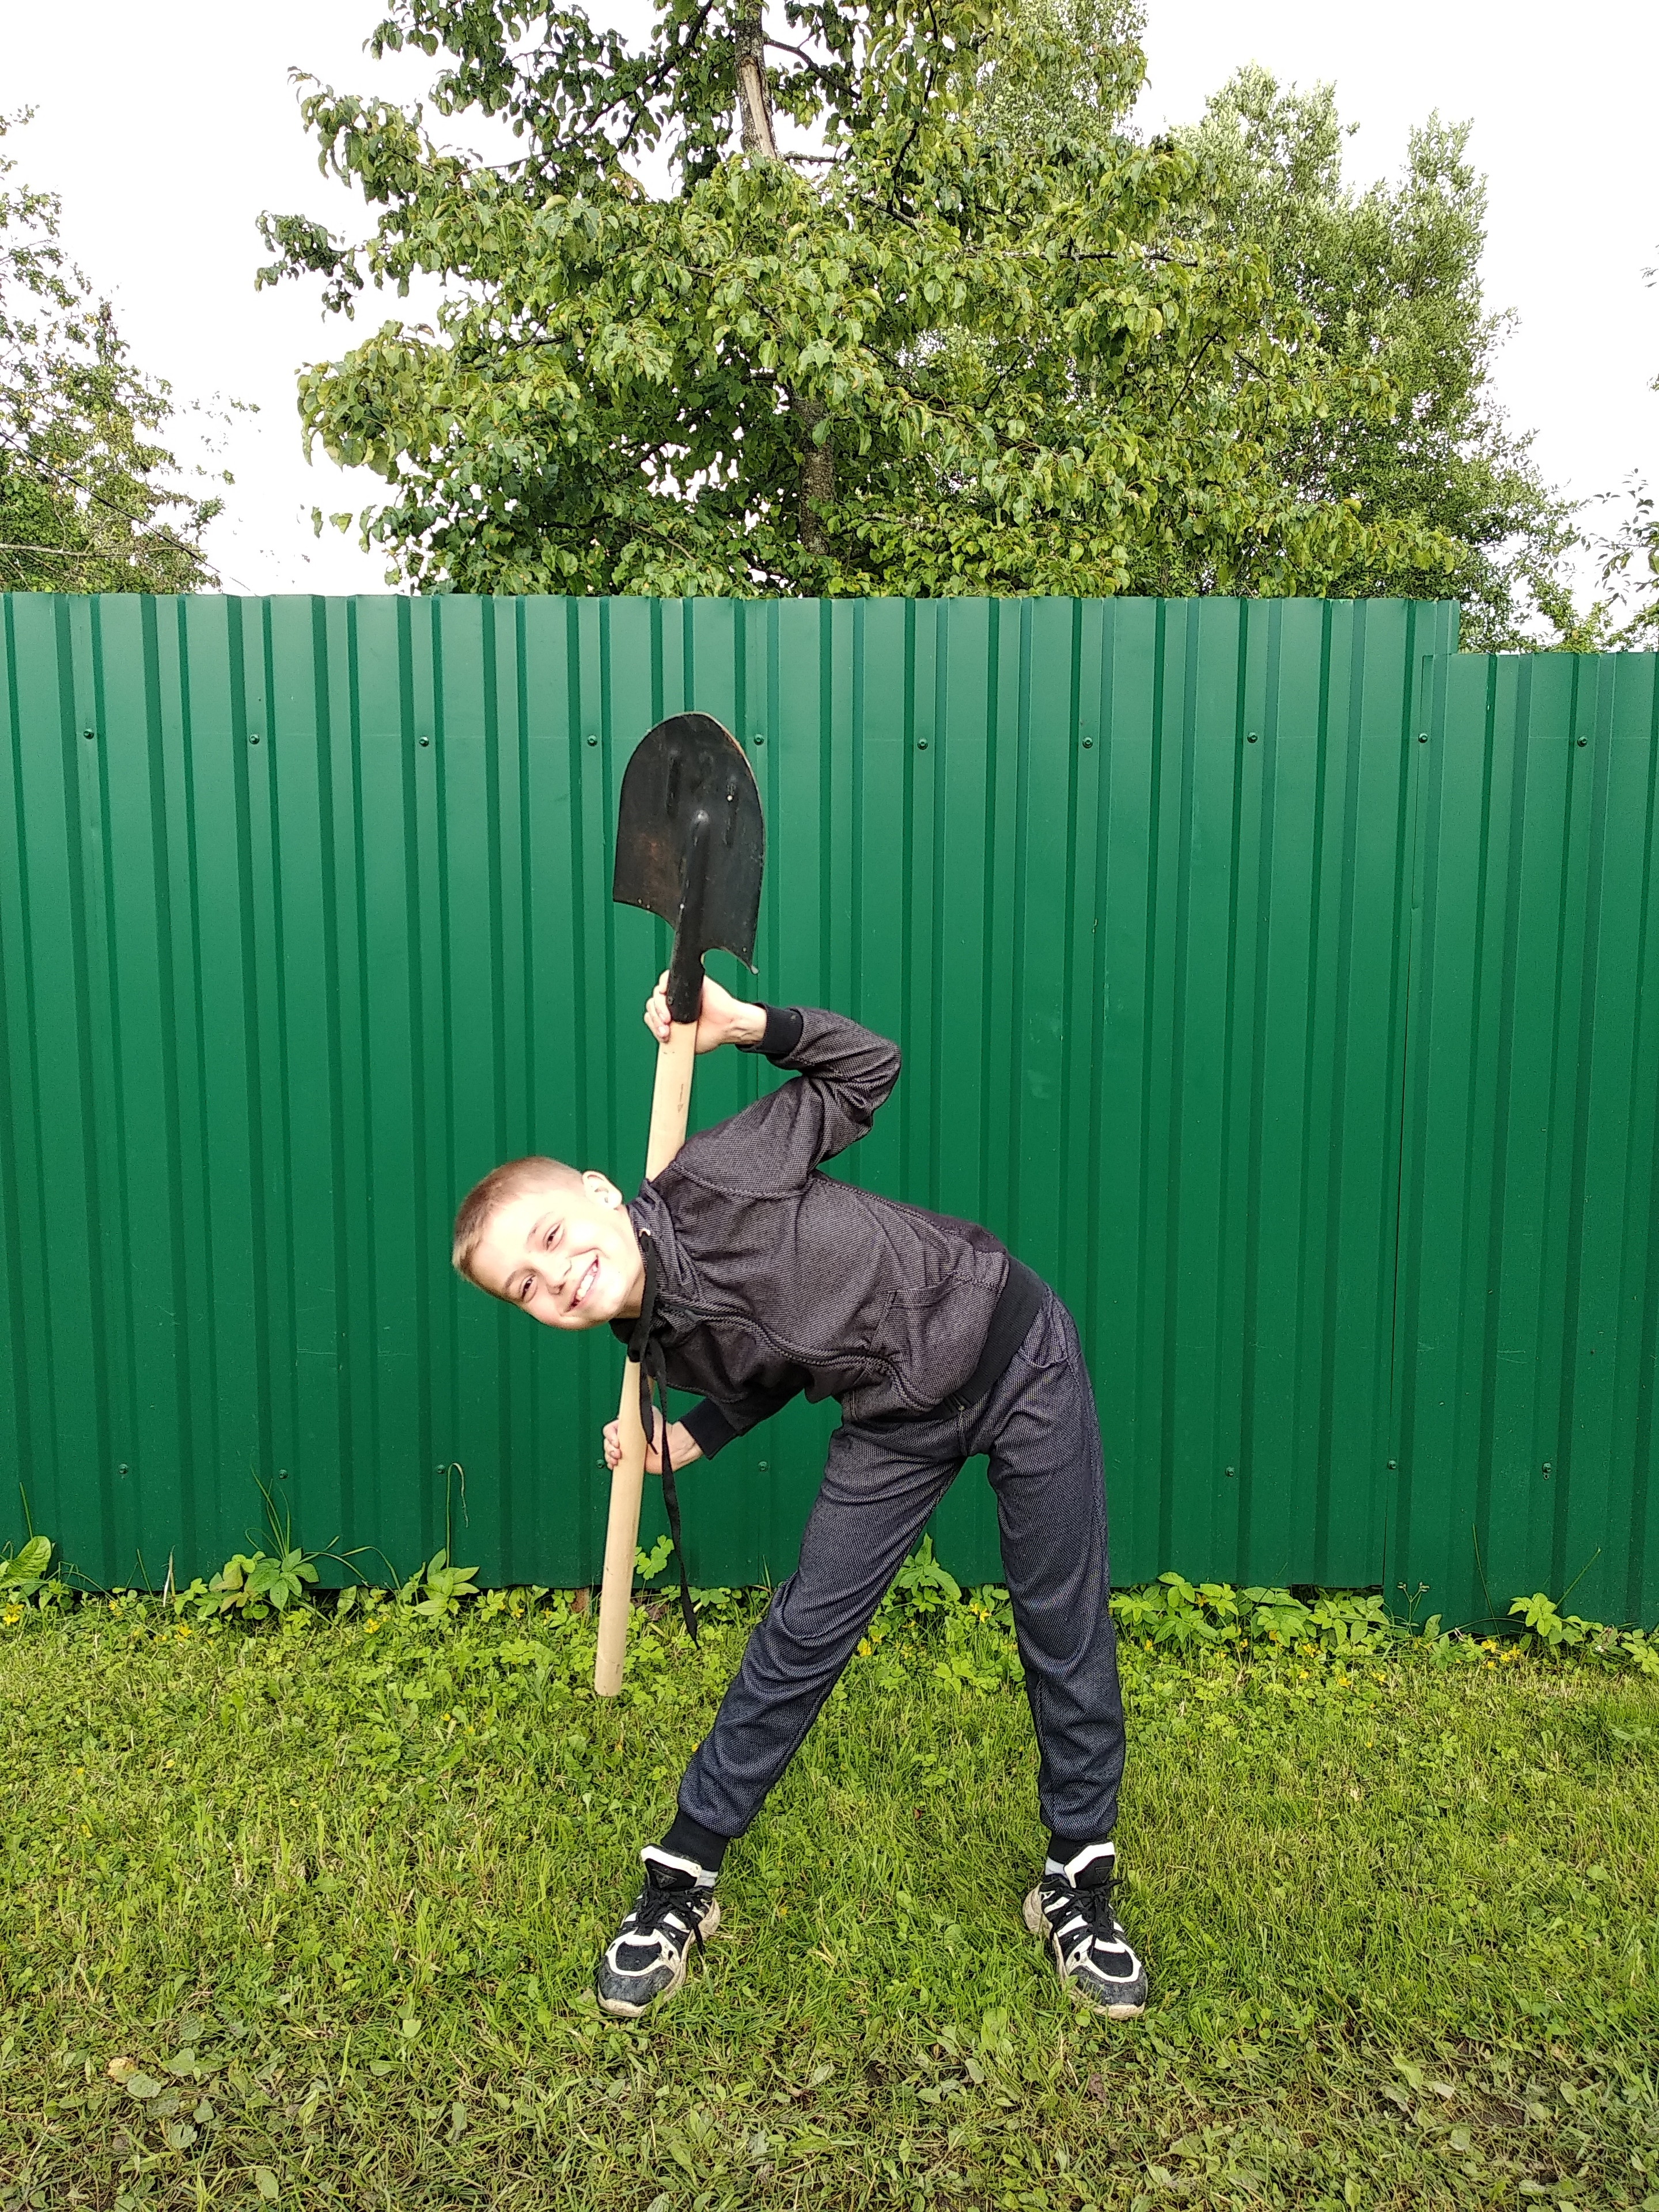 Фото №10 - Спорт на грядке: 5 крутых упражнений с лопатой